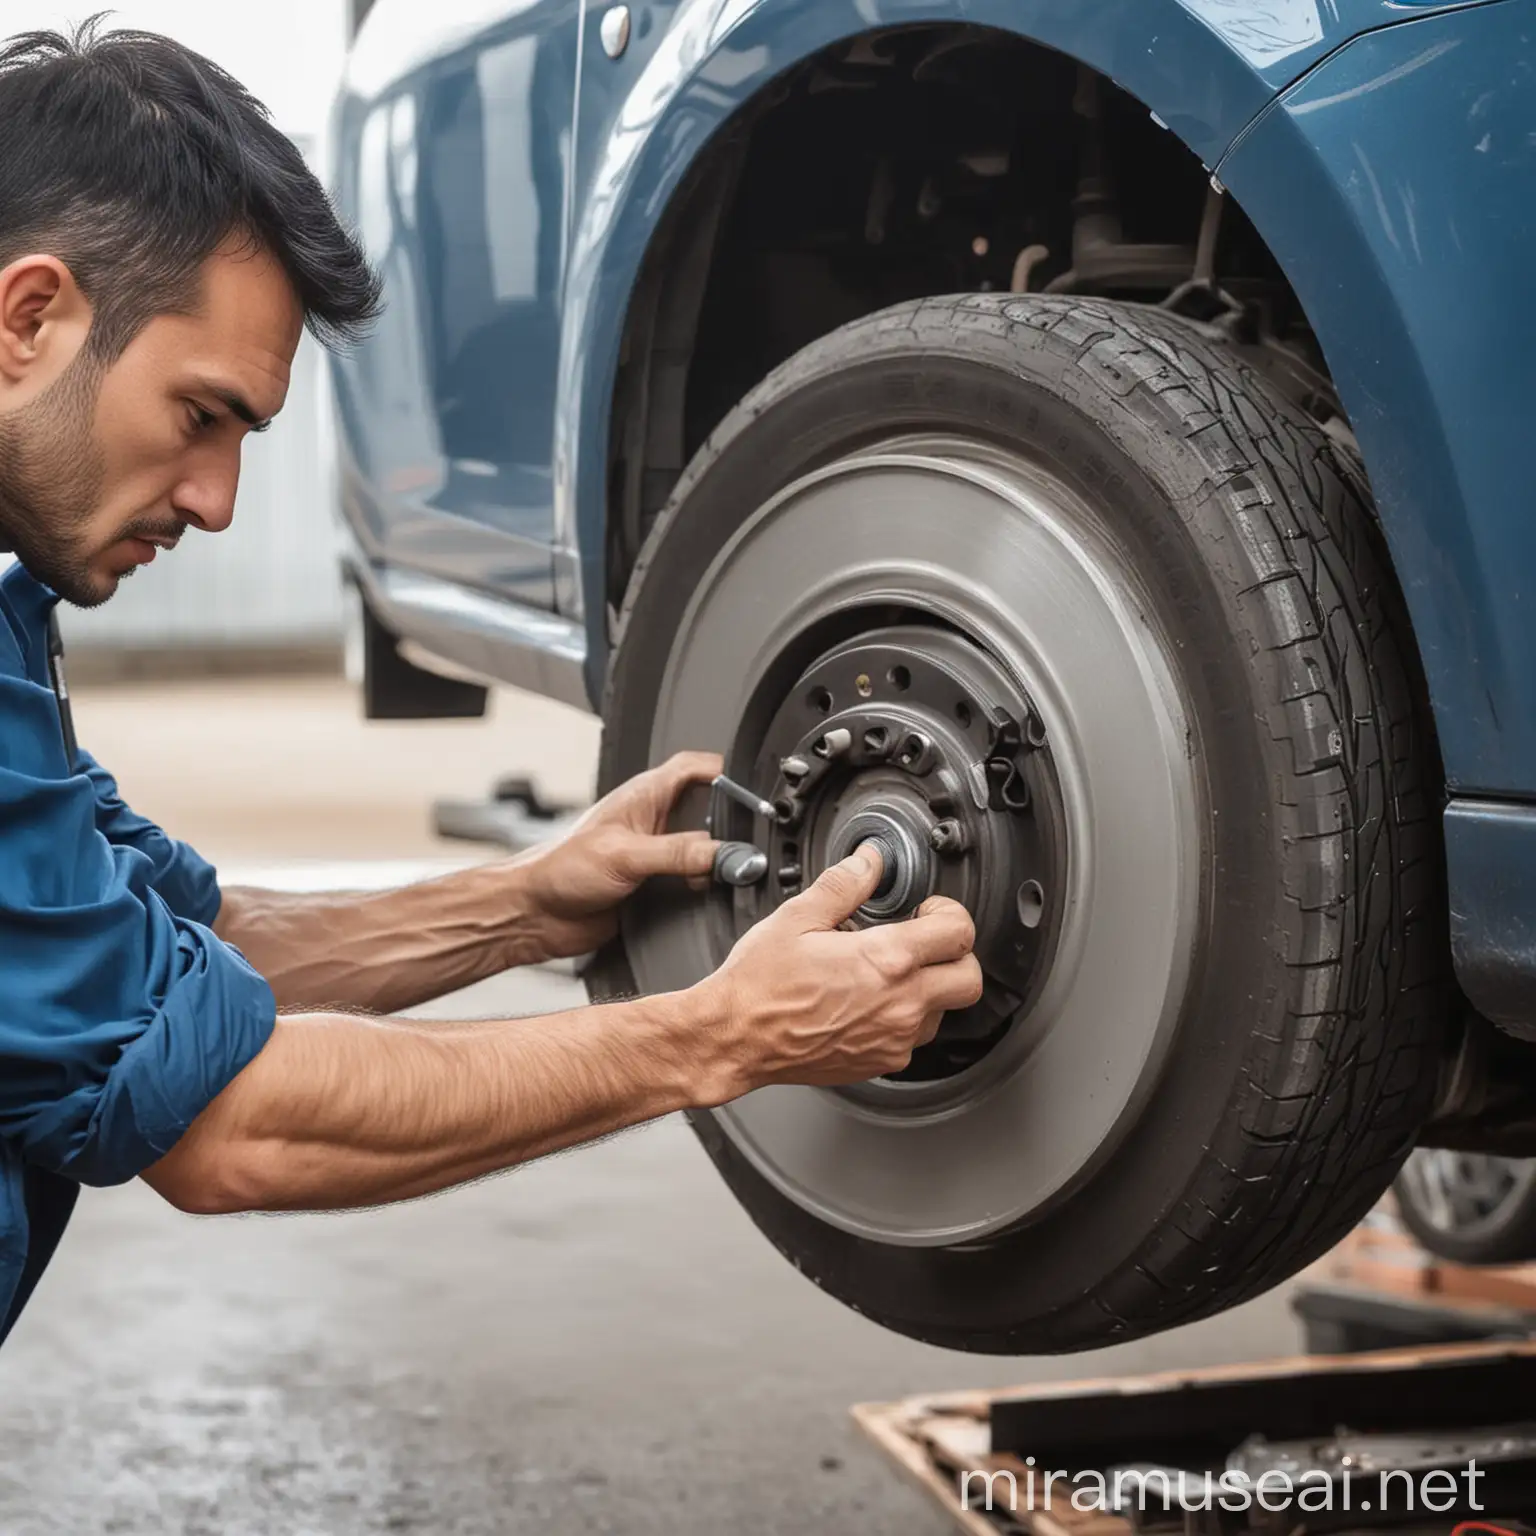 Car Repairman Holding Tools for Brake Disc Repair